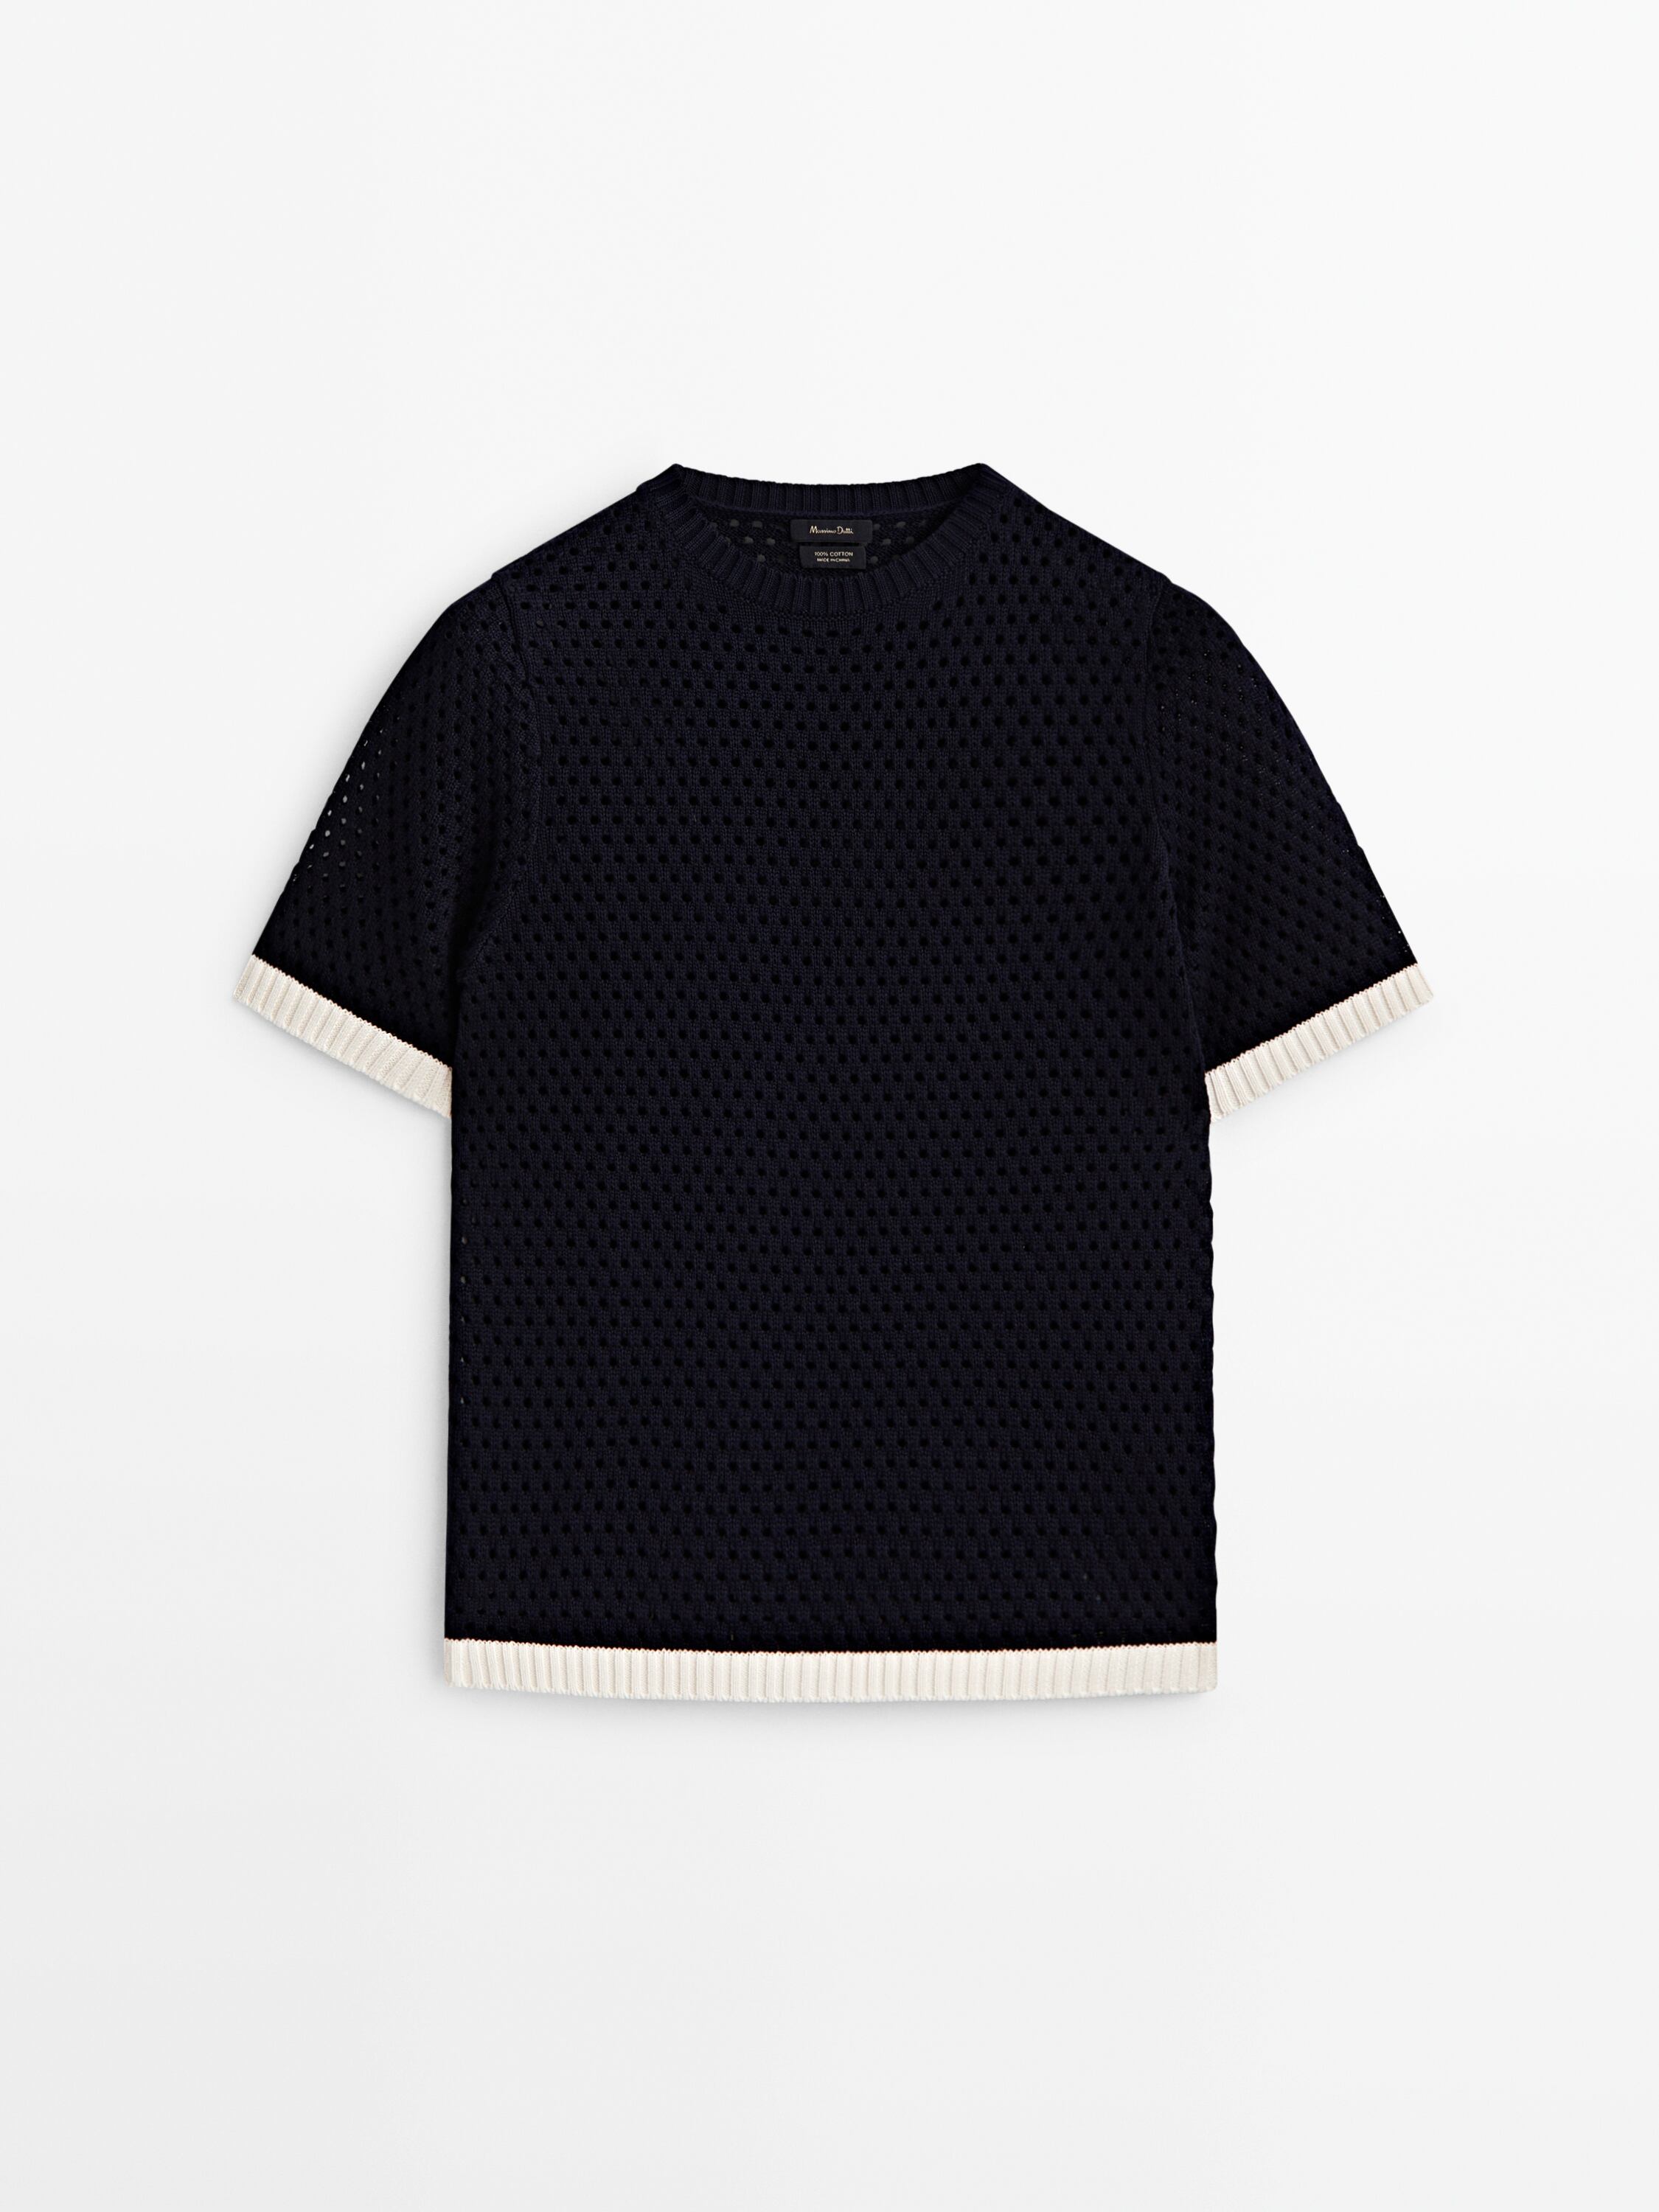 Contrast short sleeve open-knit sweater